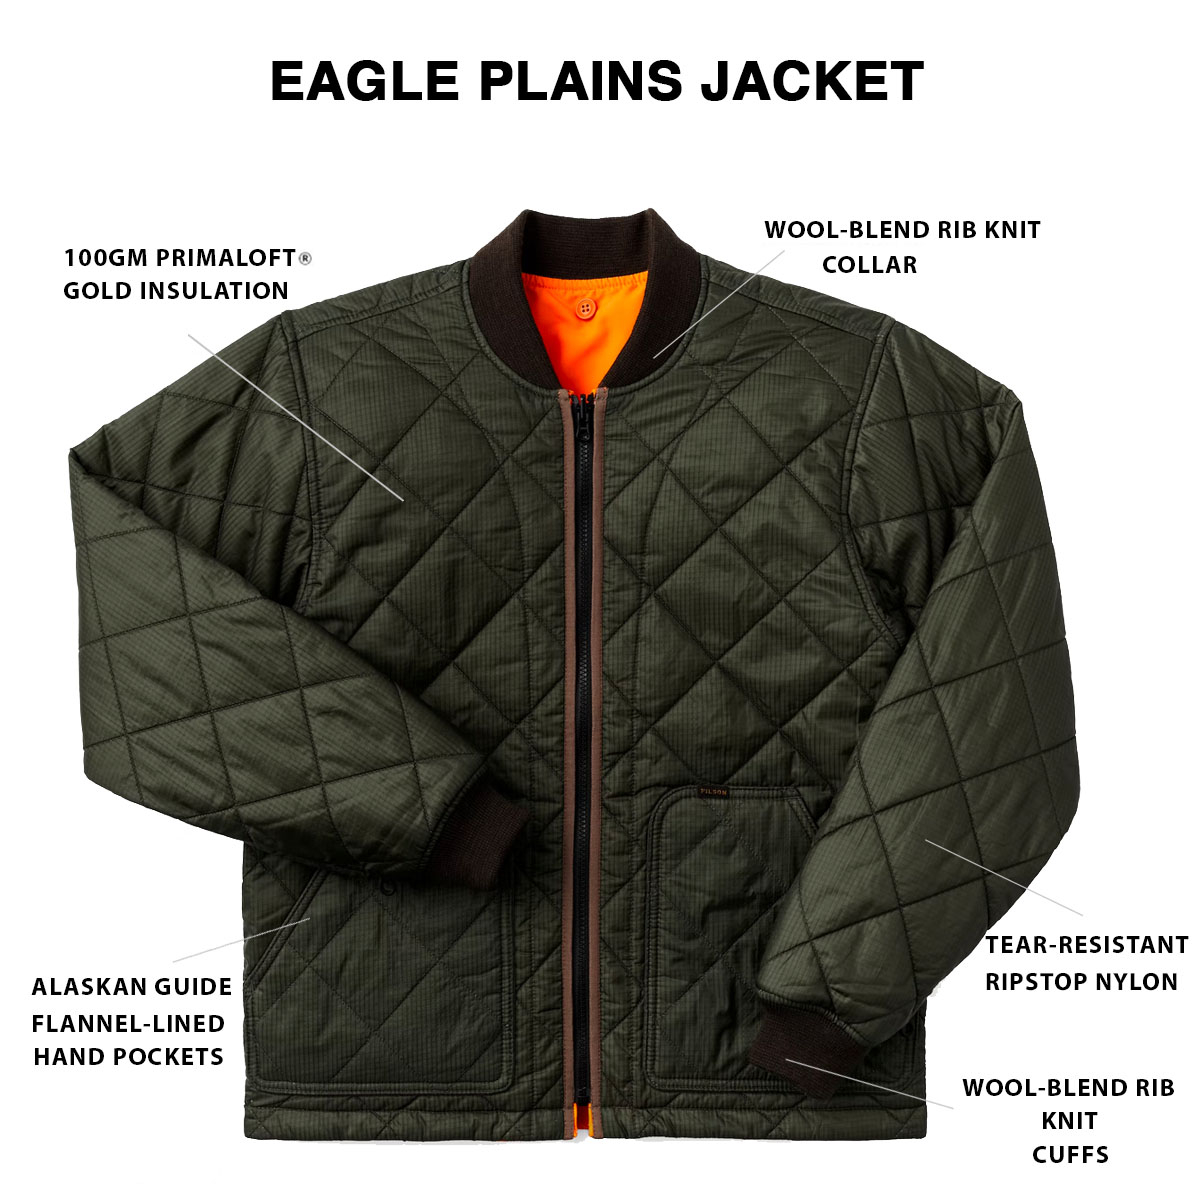 Filson Eagle Plains Jacket Liner Surplus Green Blaze, mit Cordura® Ripstop nylon und 100gm PrimaLoft® Gold insulation